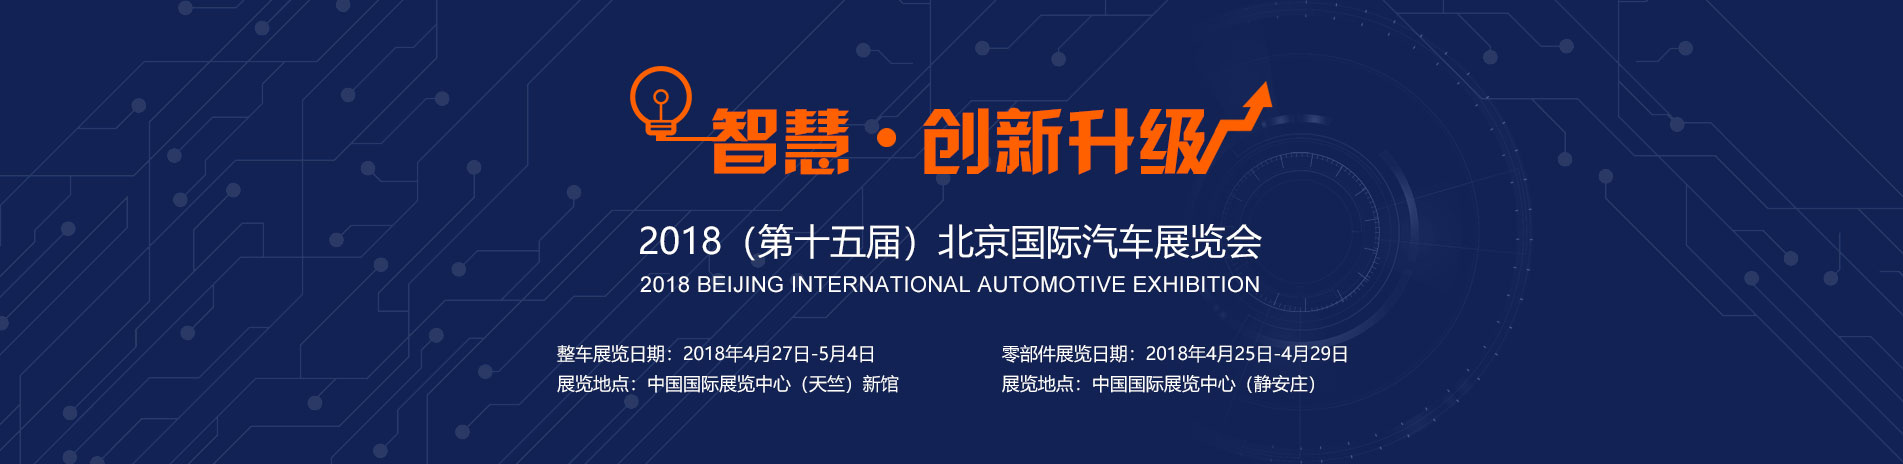 福田戴姆勒展台 智慧 · 创新升级 2018北京国际汽车展览会